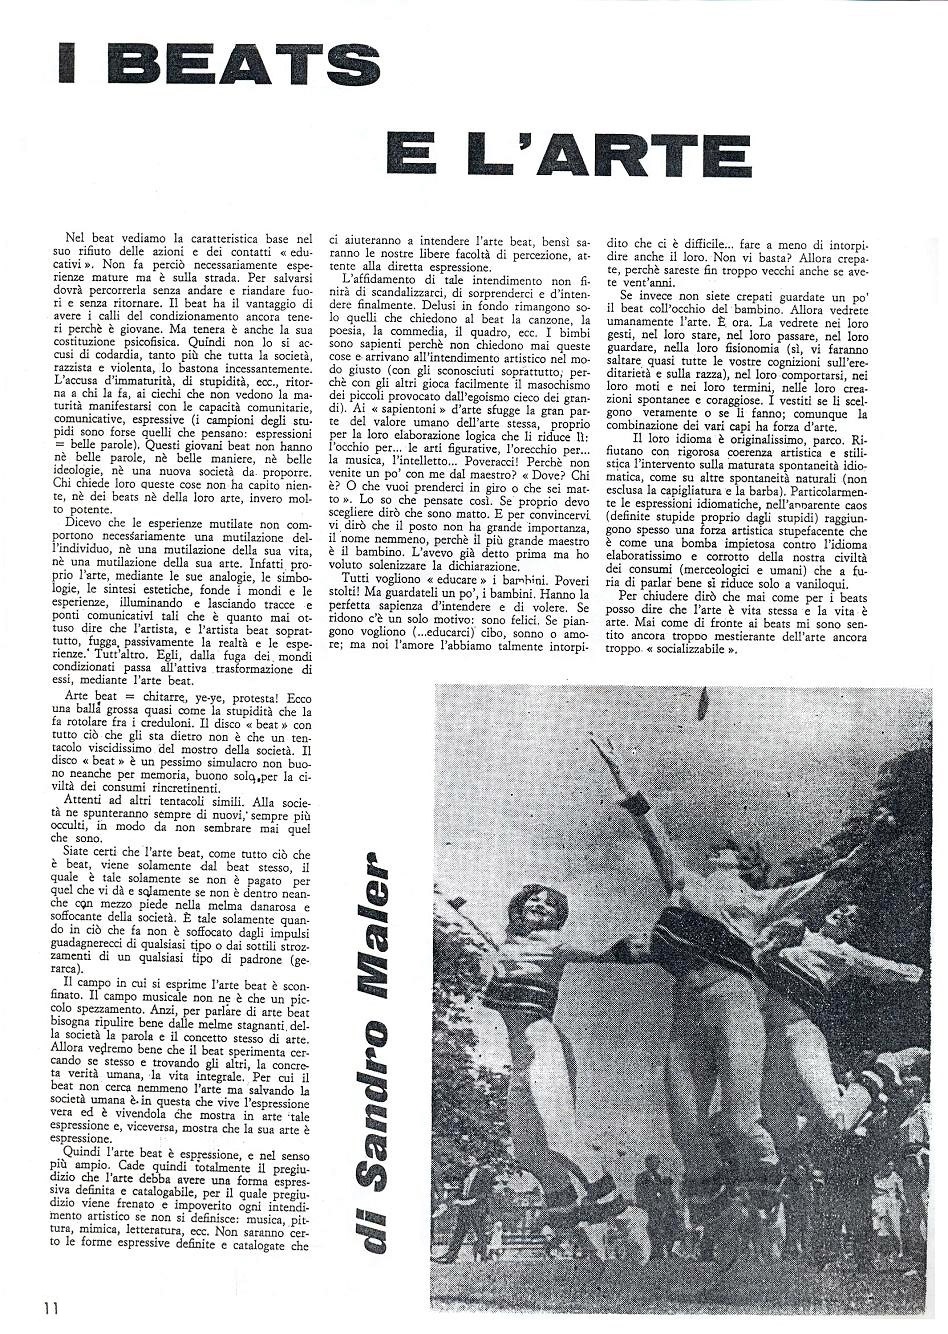 Il quinto numero della rivista Mondo Beat - Tiratura copie 8.000 - Datato 30 aprile 1967